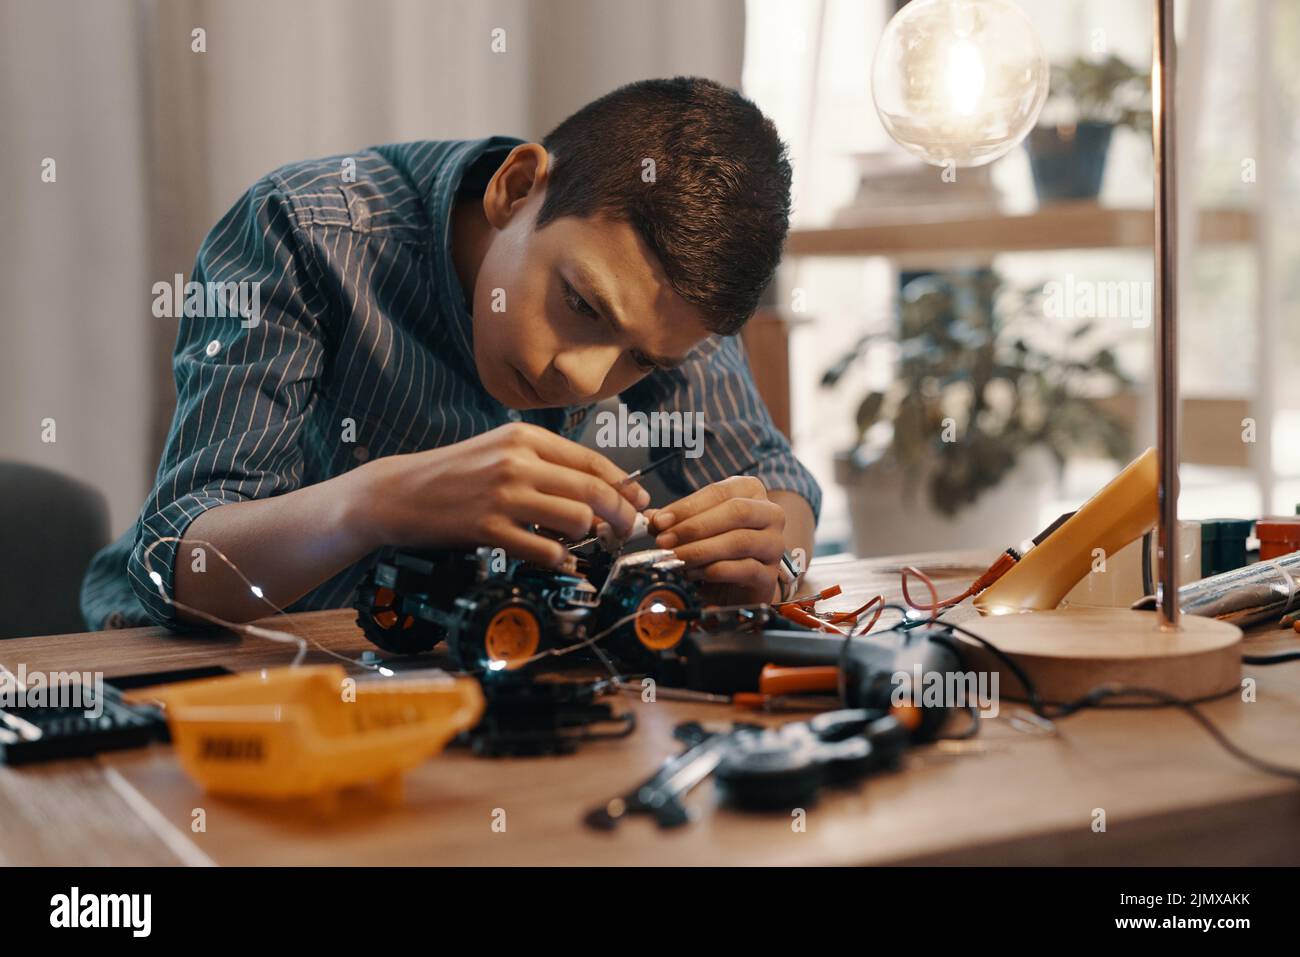 El foco es su aliado más grande en este campo. Un muchacho joven hermoso que construye un coche robótico del juguete en el país. Foto de stock